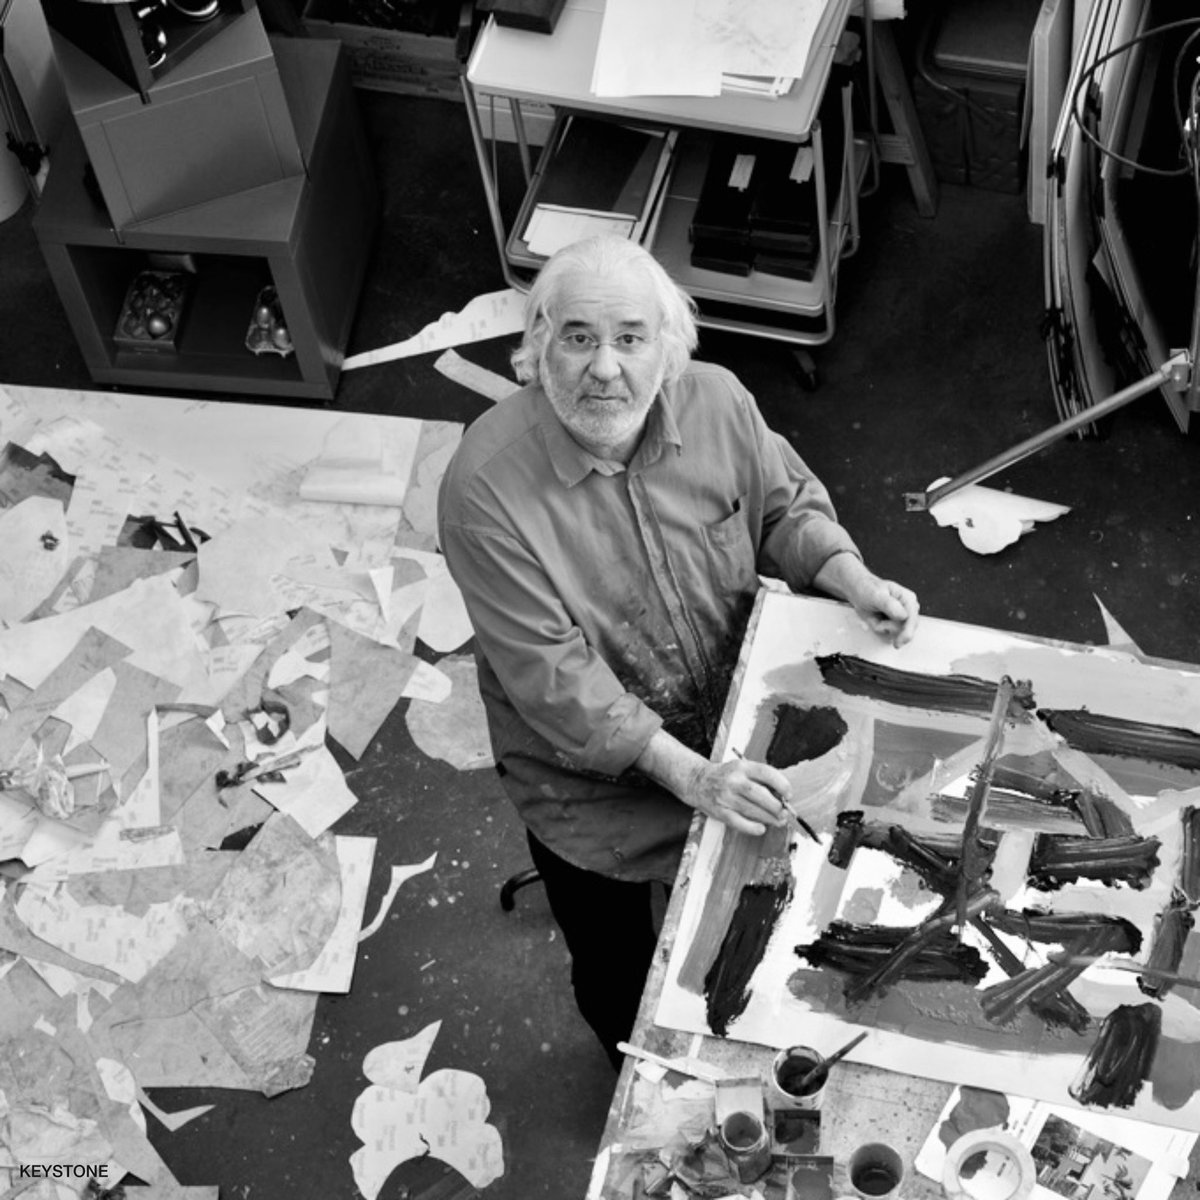 Artiste et graphiste de renommée internationale, Roger Pfund était une figure marquante de la création suisse. Souhaitant s’adresser à chacune et chacun par ses créations, il y est parvenu magistralement. Avec mes sentiments de compassion pour sa famille et ses proches.